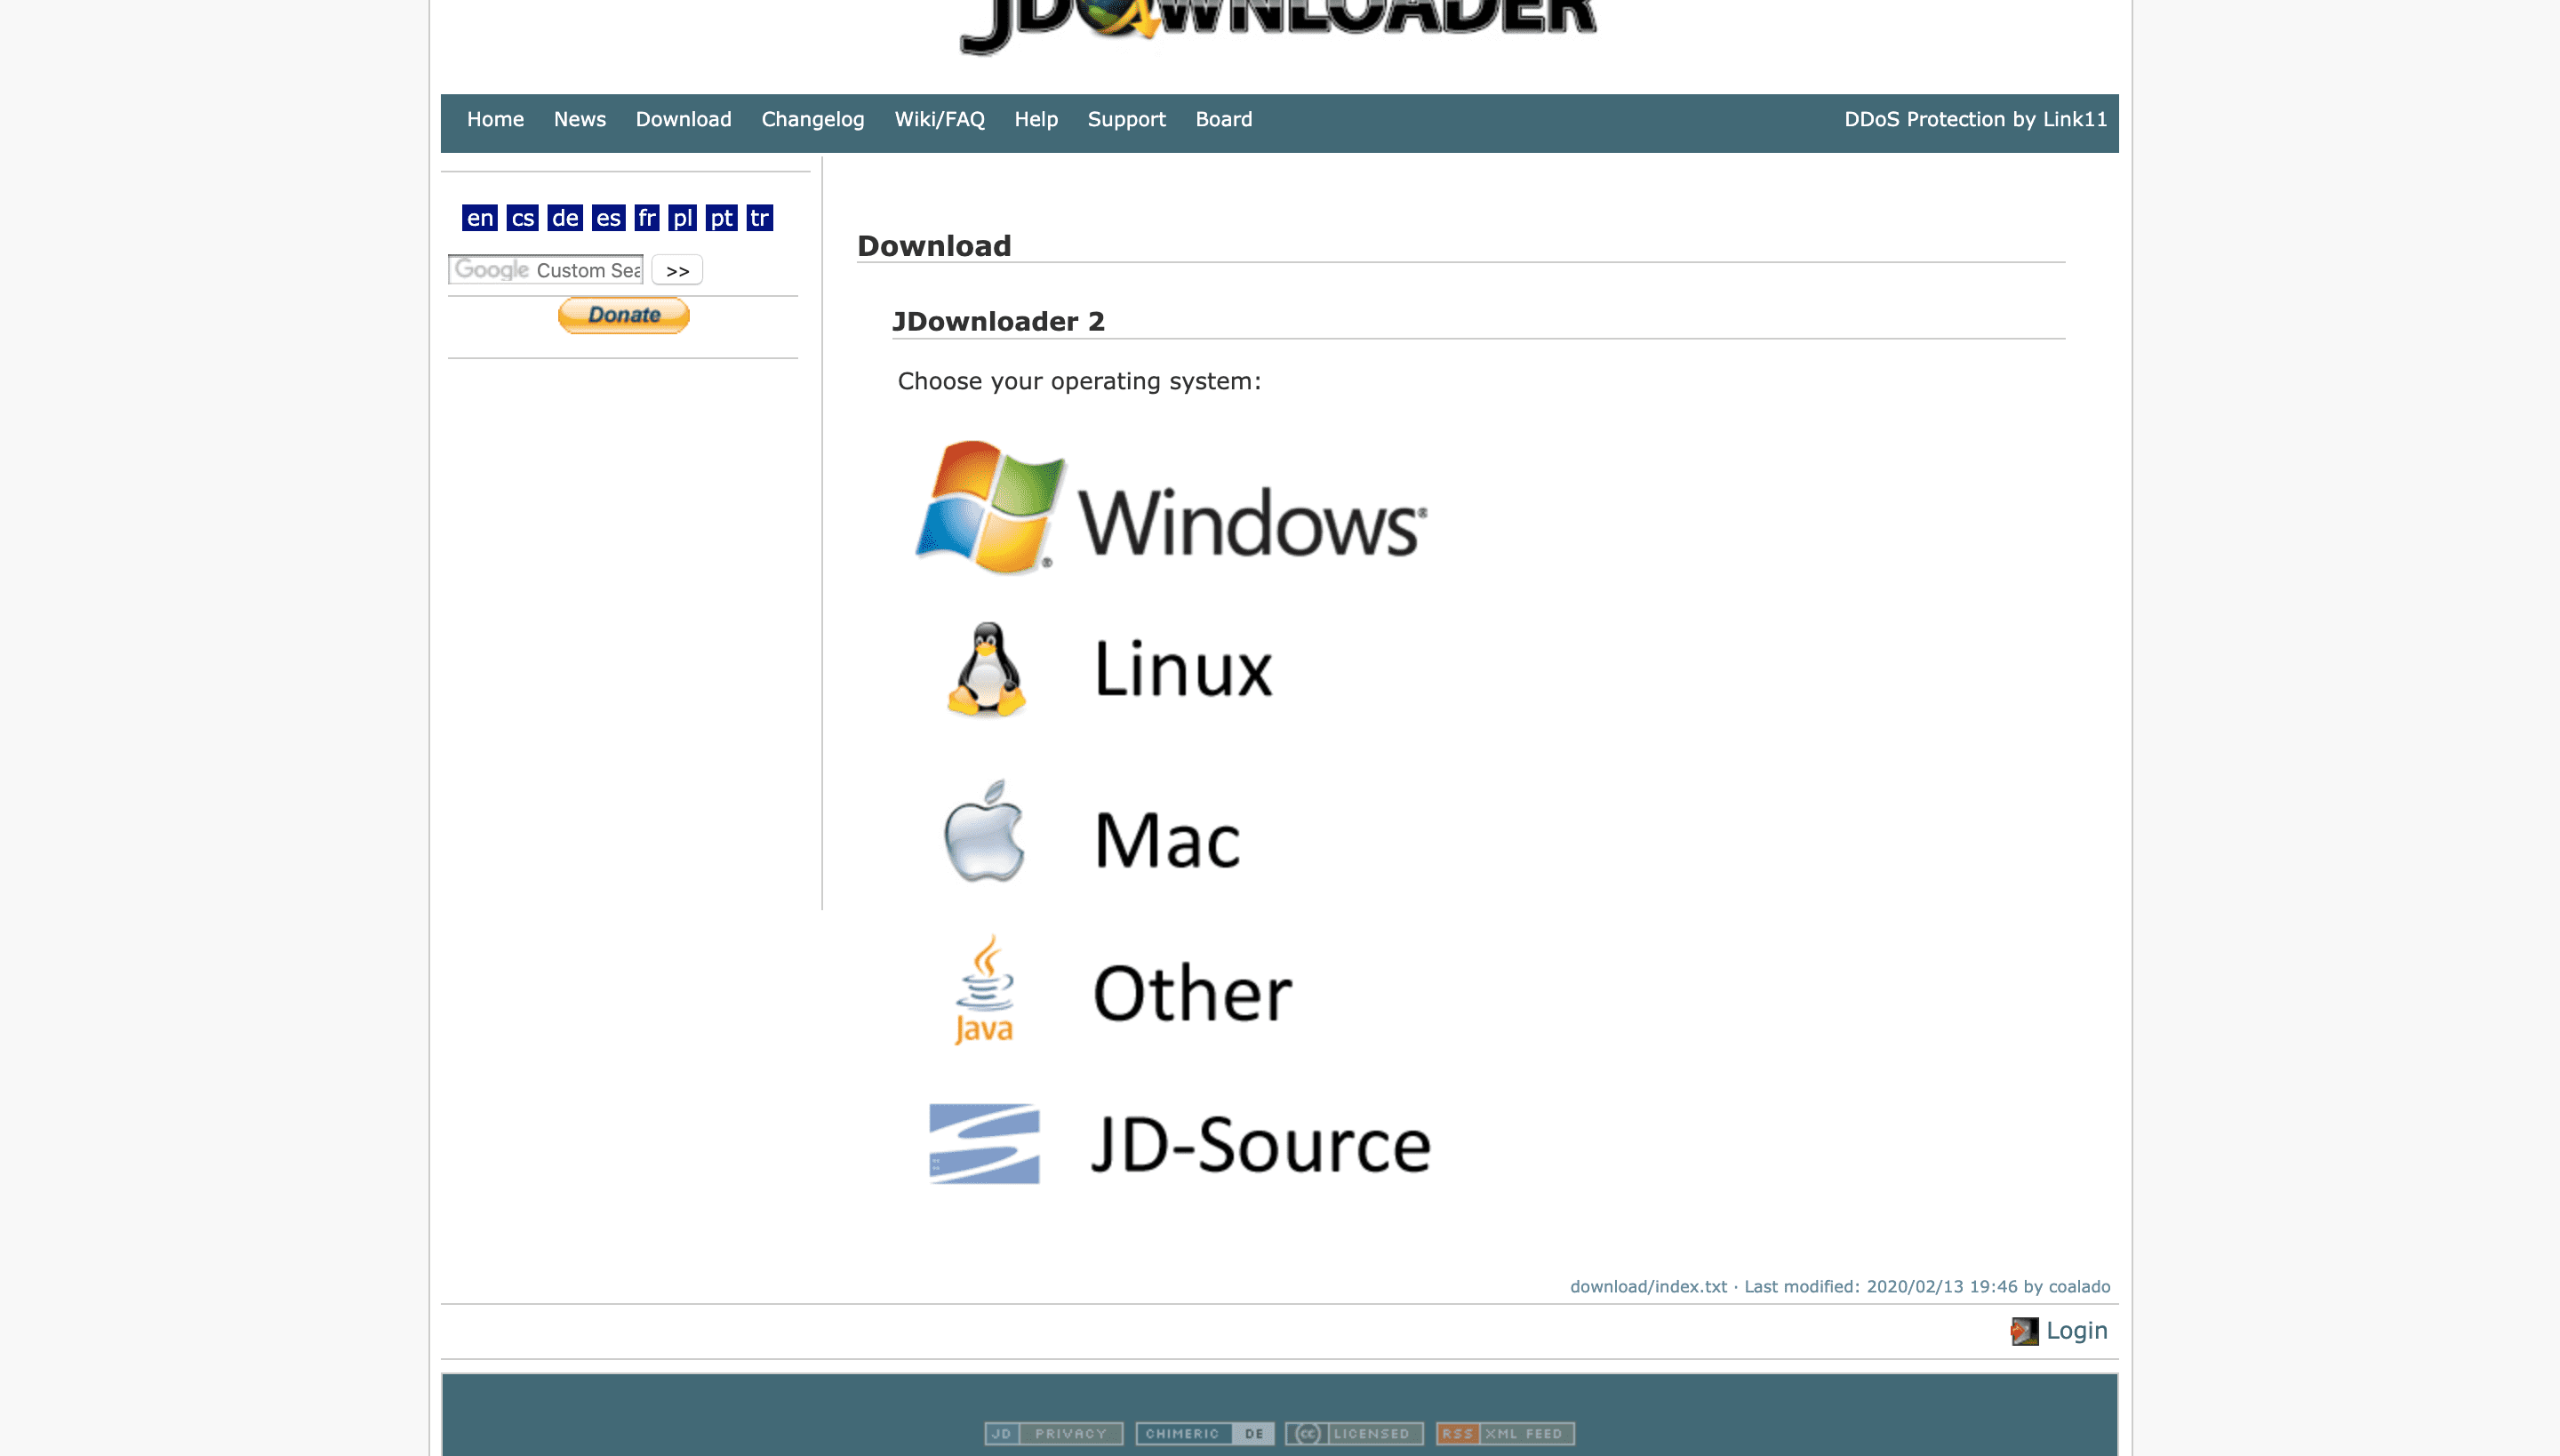 jdownloader to download files from mega.nz